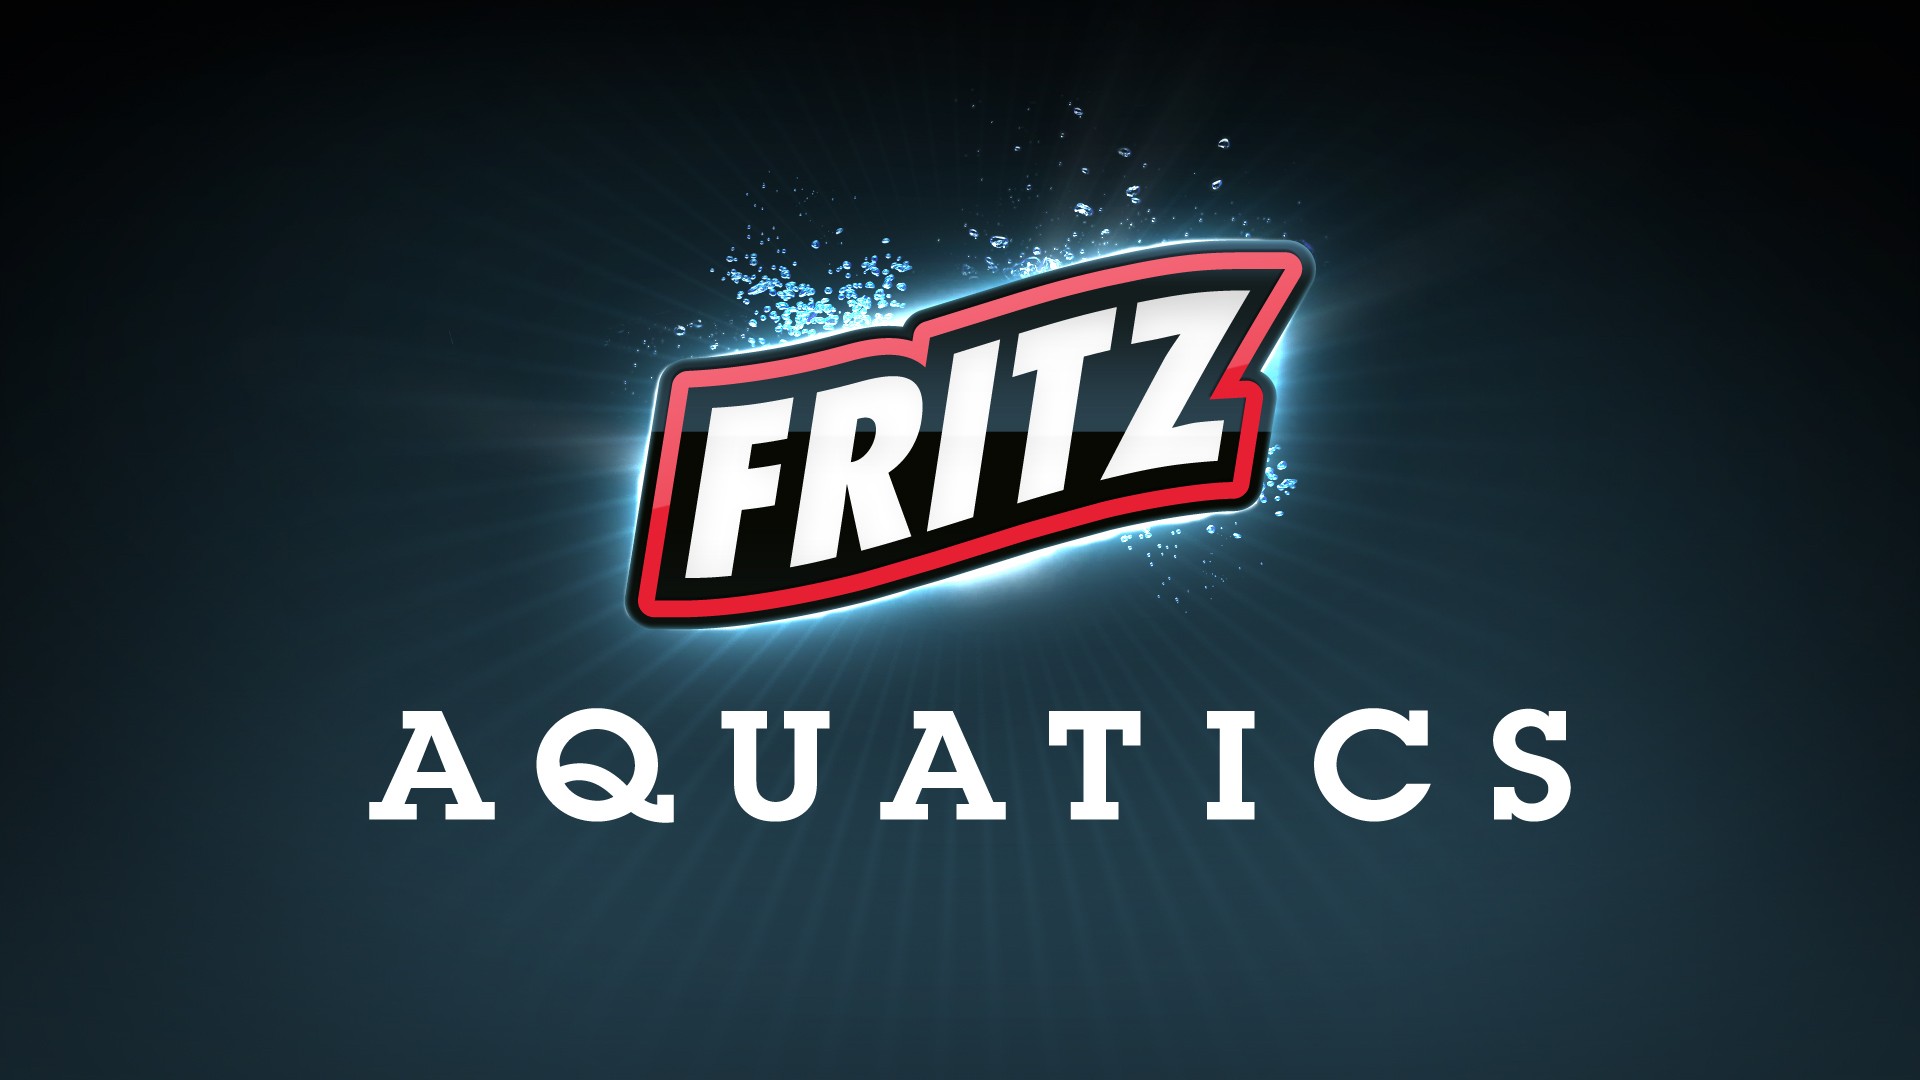 Fritz Aquatics